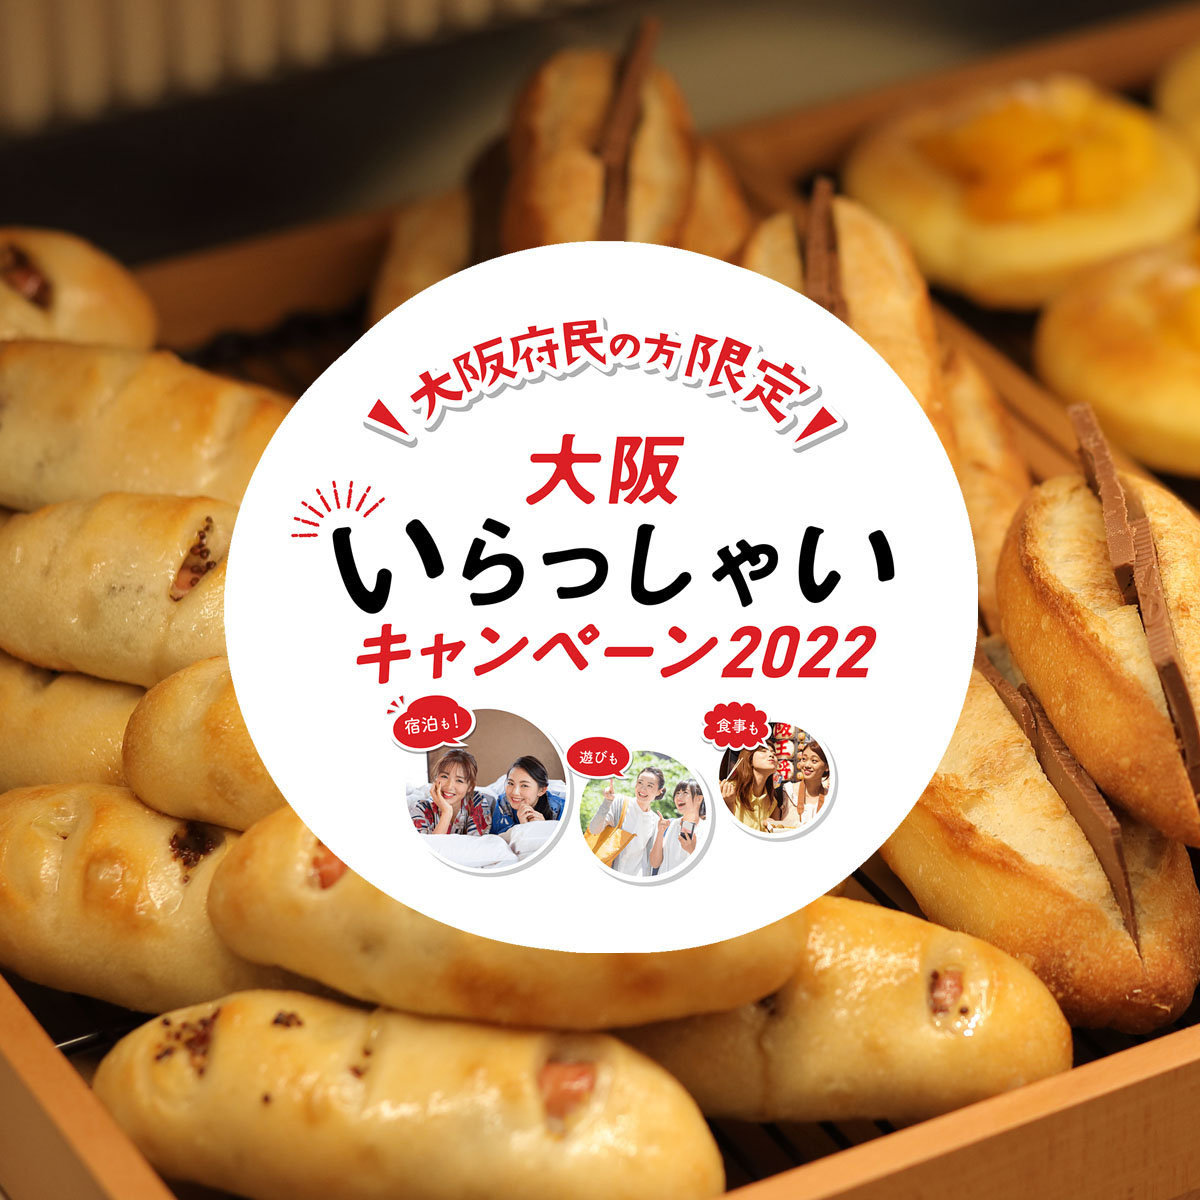 【大阪いらっしゃいキャンペーン2022】ル・パン神戸北野 伊丹空港店でクーポンをご使用いただけますサムネイル